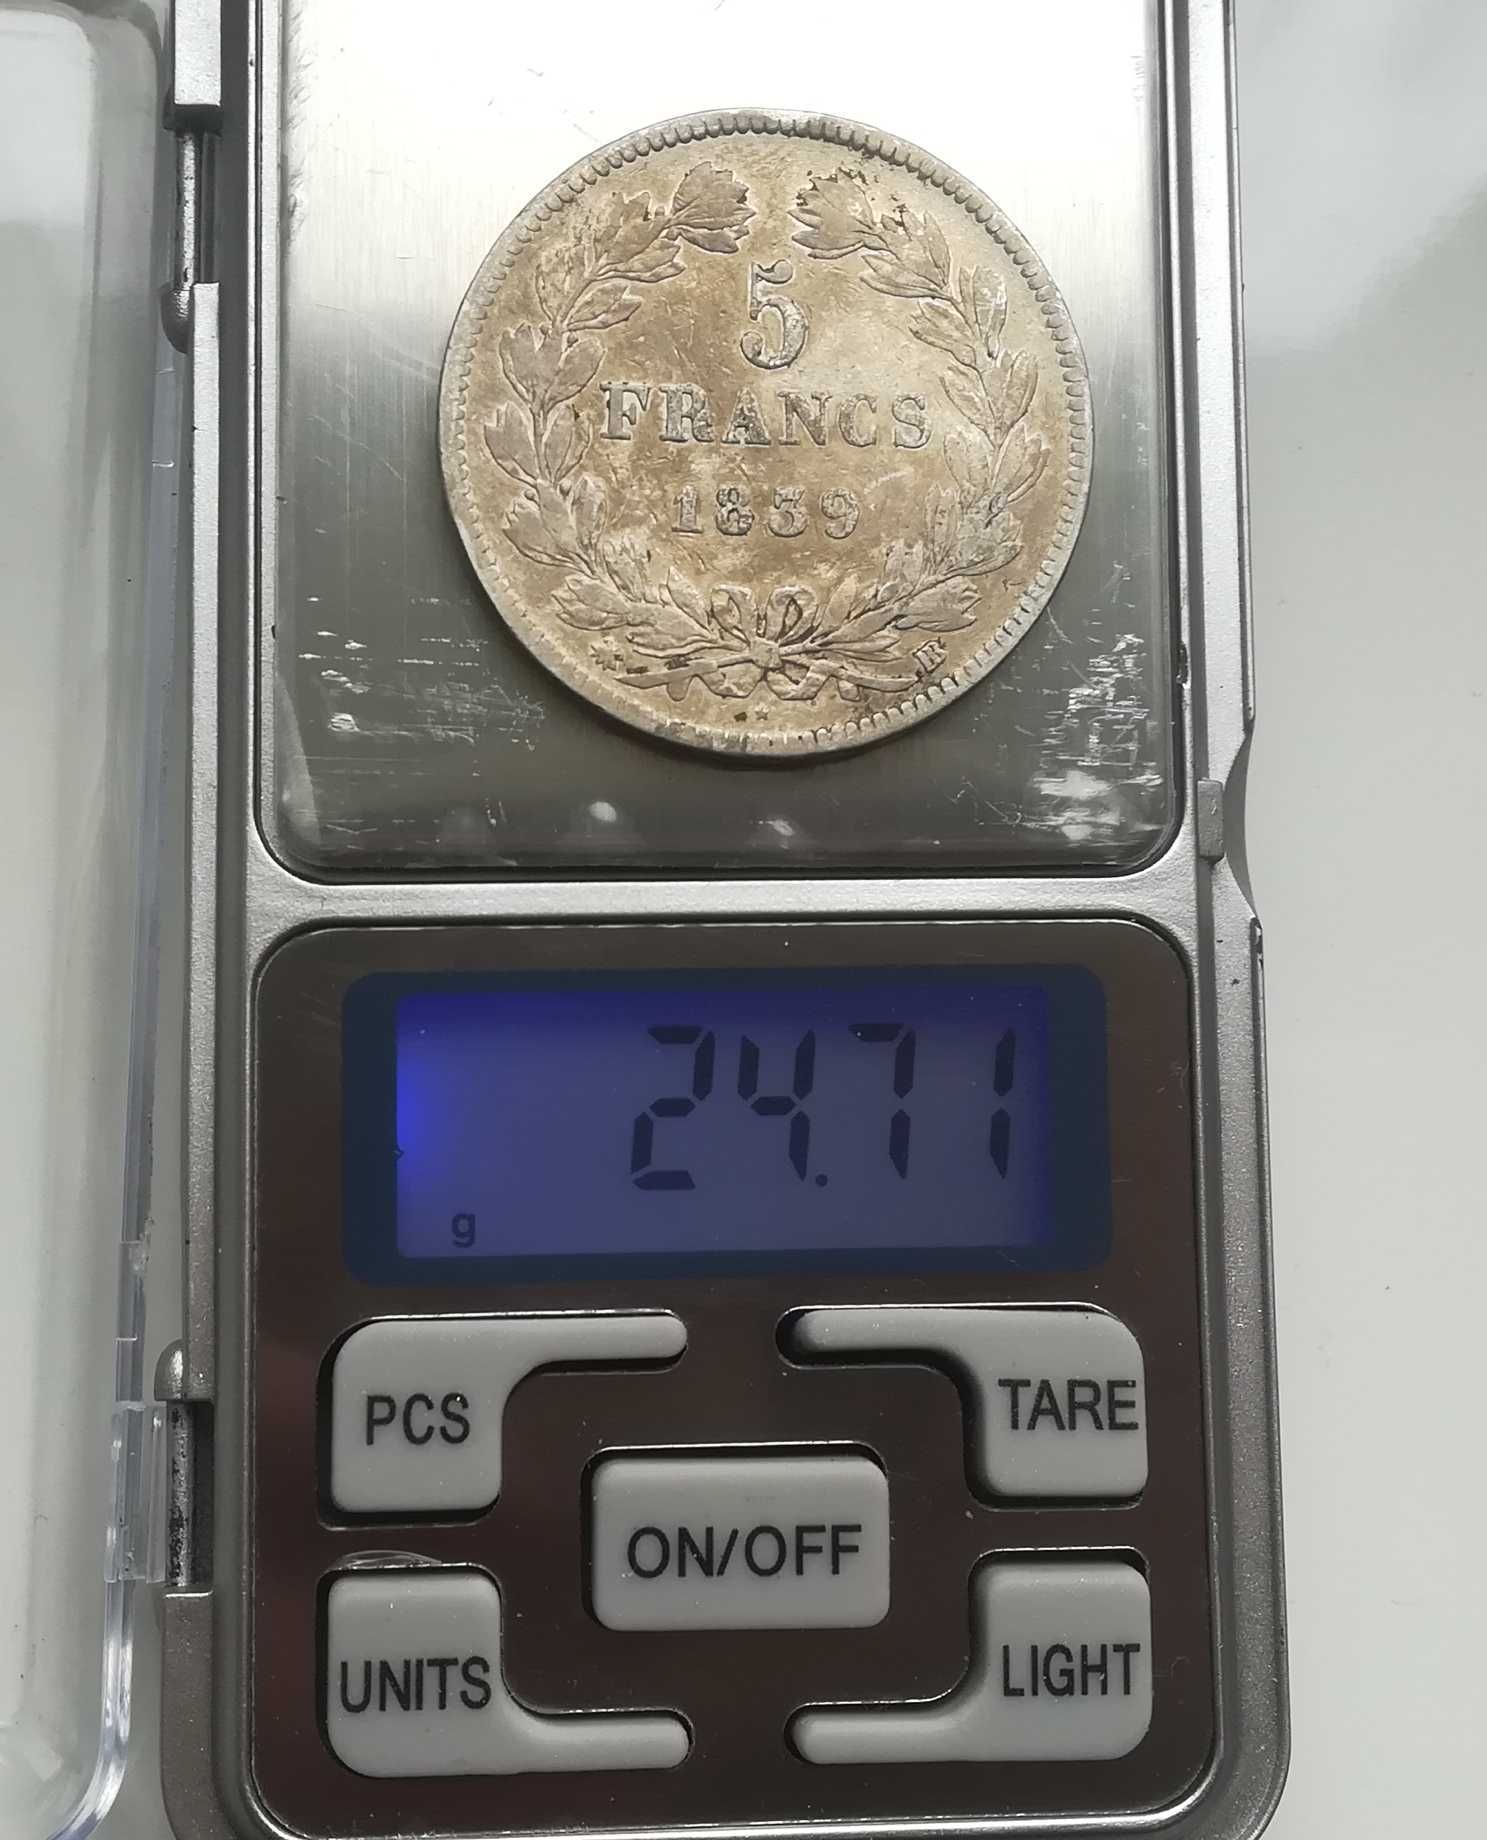 Moneta srebrna srebro 5 franków Francja z 1839 roku typ BB. Srebrne.